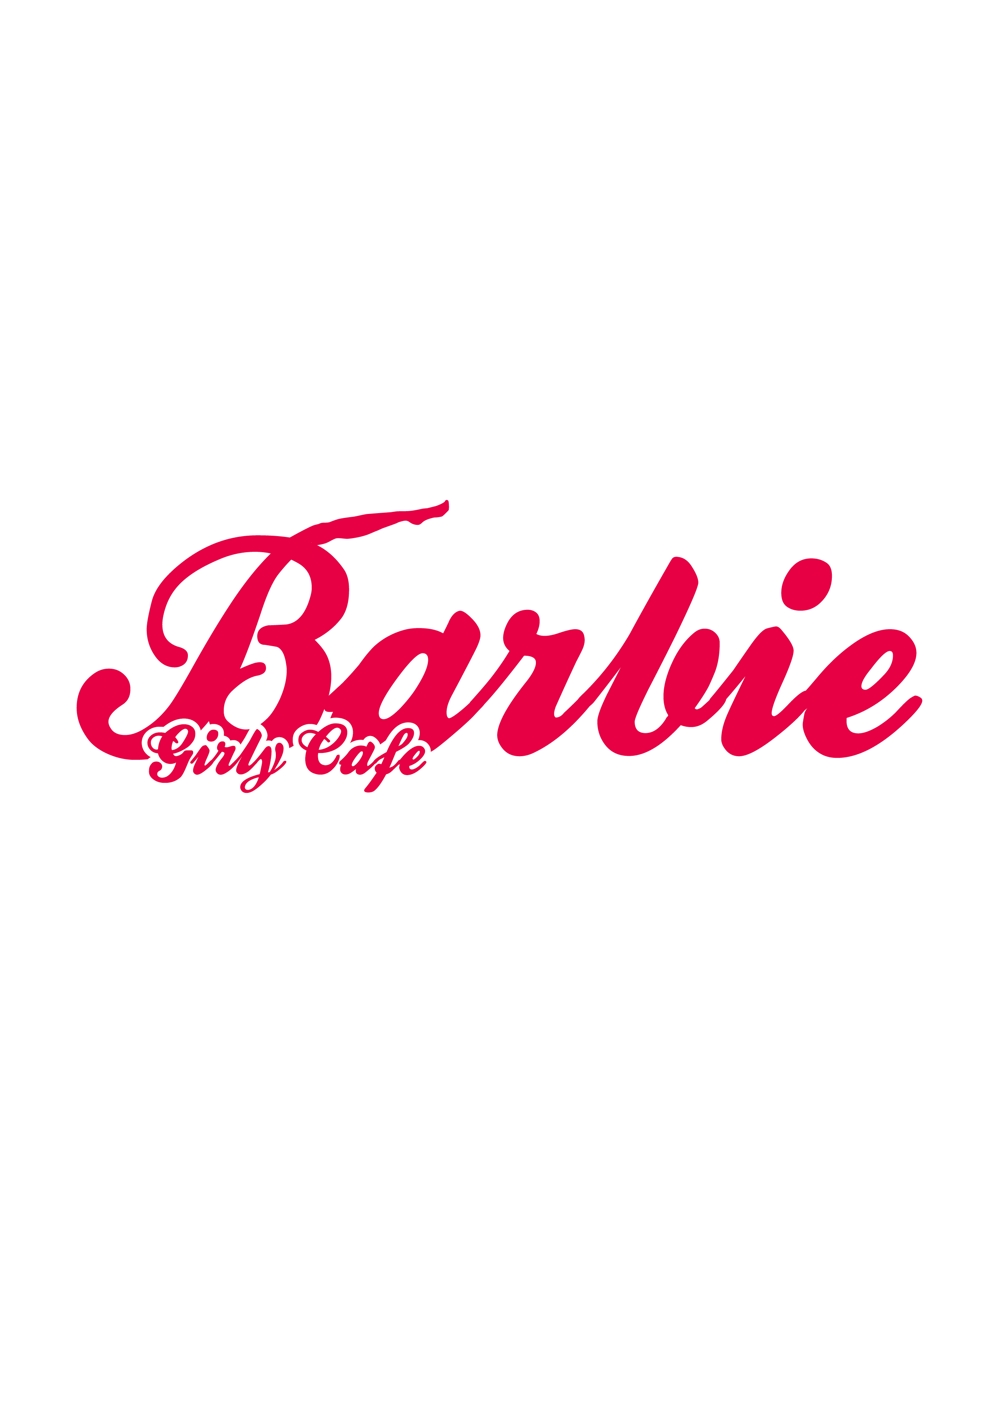 130725_logo_barbie-01.jpg